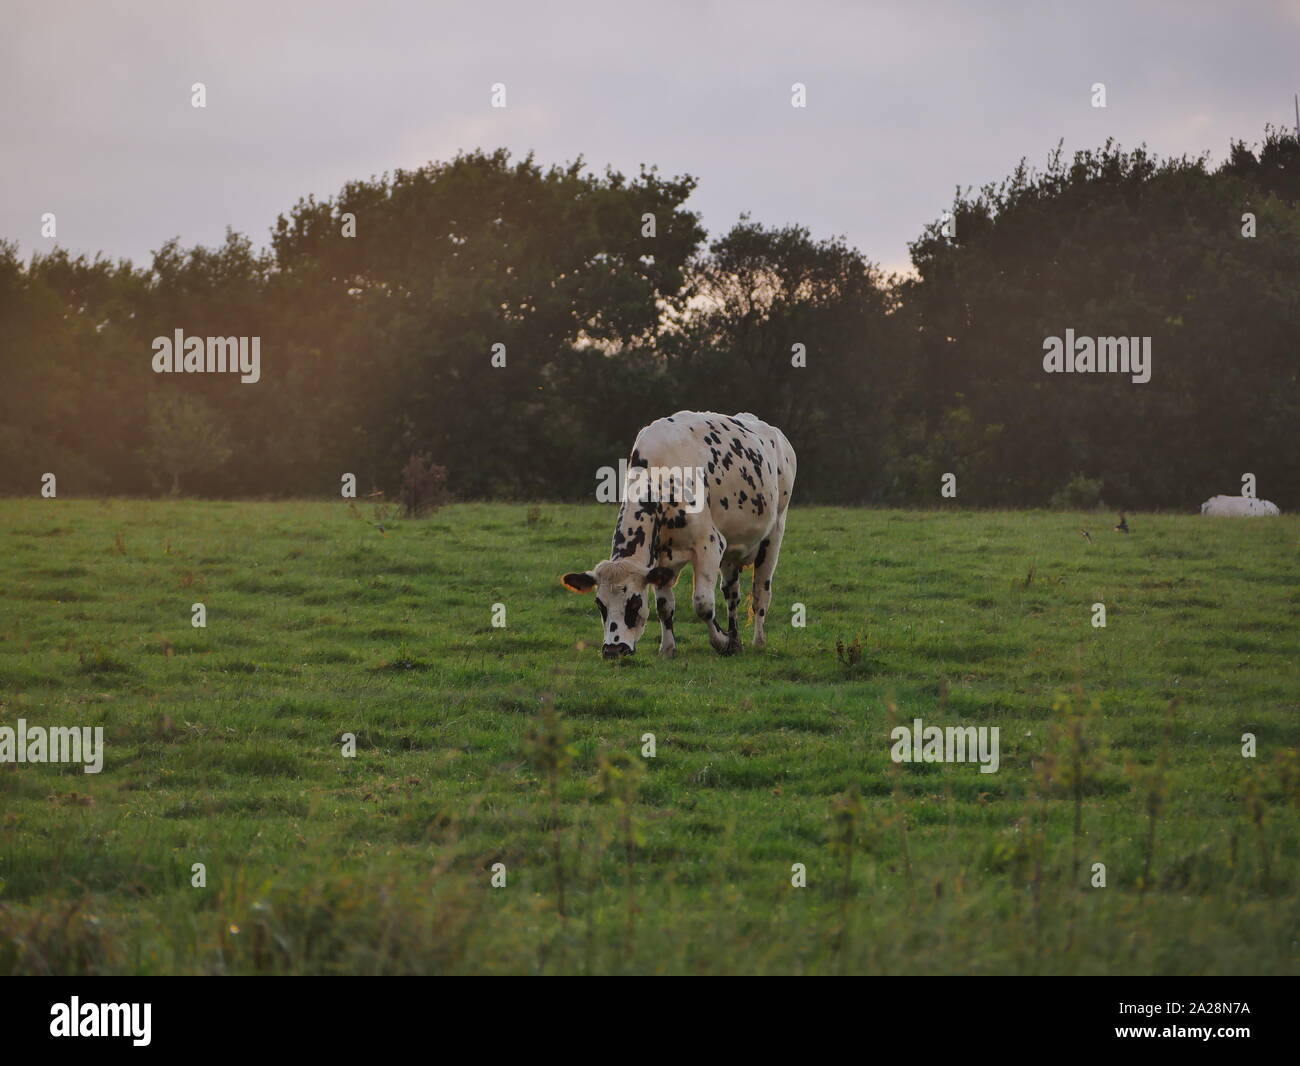 Vache dans un-Prés, troupeau de Vaches, vache à lait, vache ein VIANDE, vache Breton, vache qui broute de l herbe Stockfoto